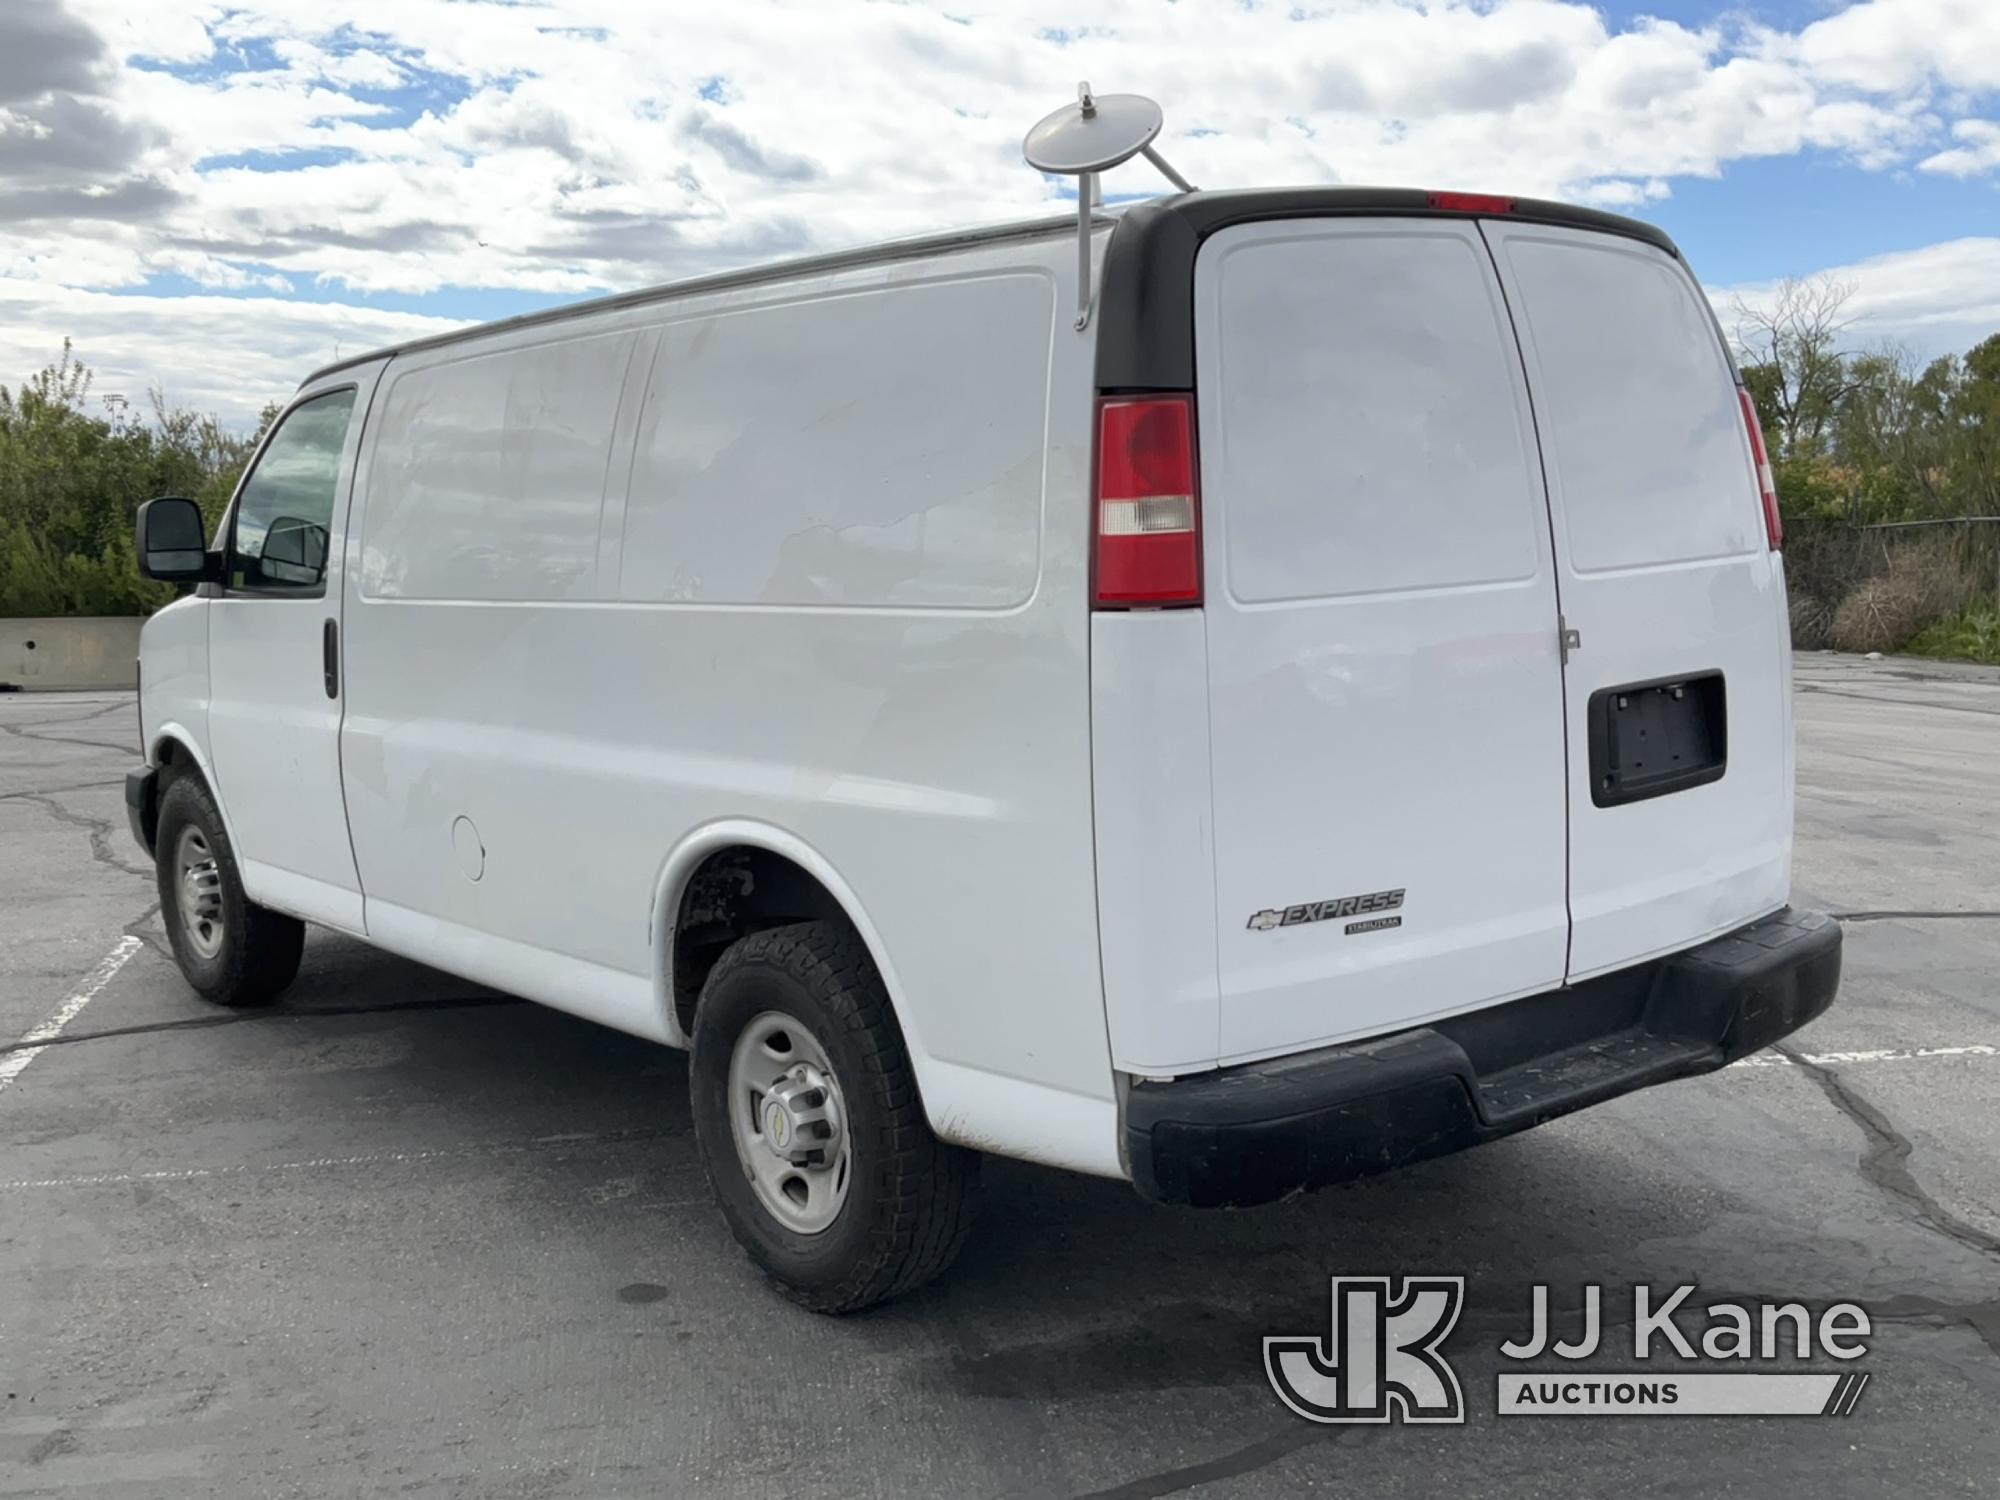 (Salt Lake City, UT) 2014 Chevrolet Express G2500 Cargo Van Runs & Moves) (Check Engine Light On